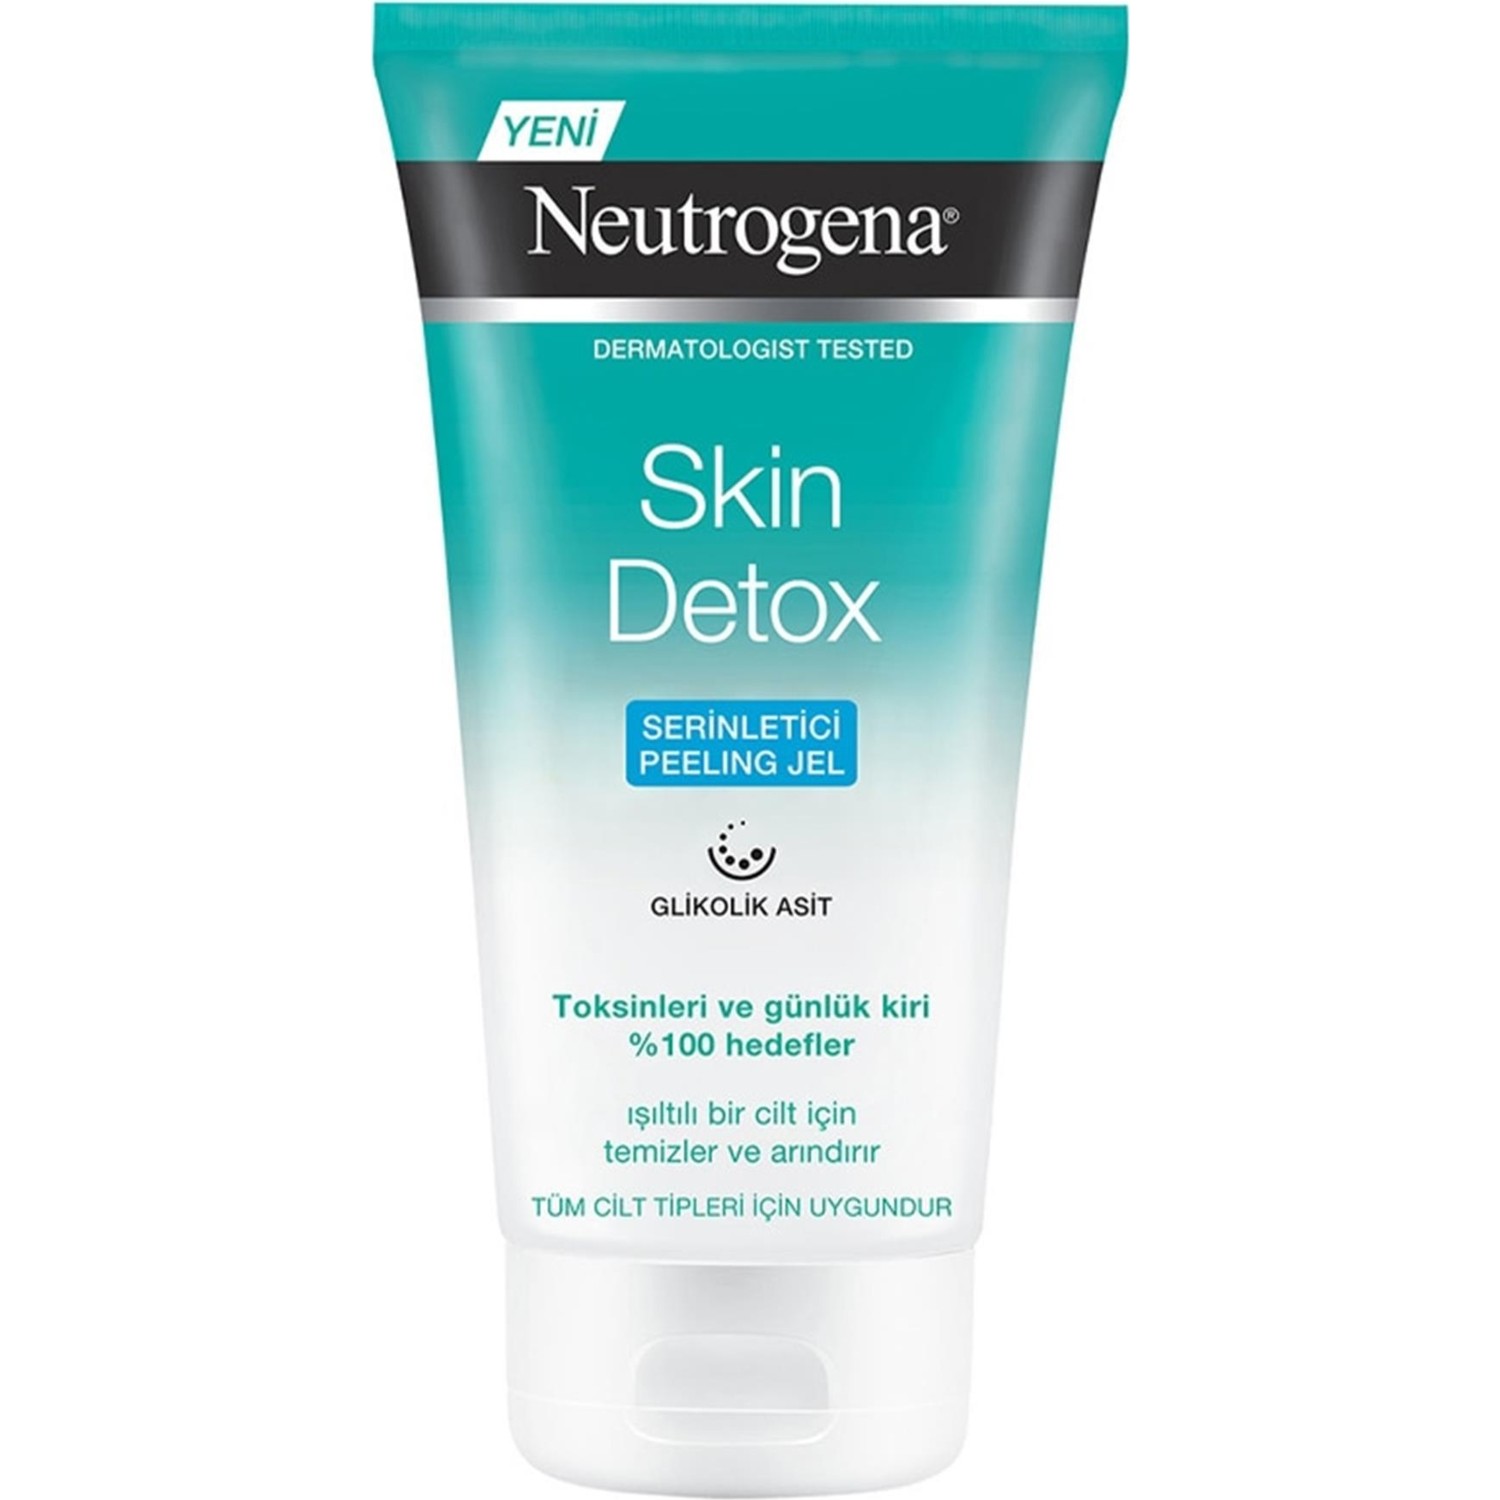 Освежающий пилинг-гель Neutrogena Skin Detox, 150 мл освежающий гель пилинг neutrogena skin detox 150 мл